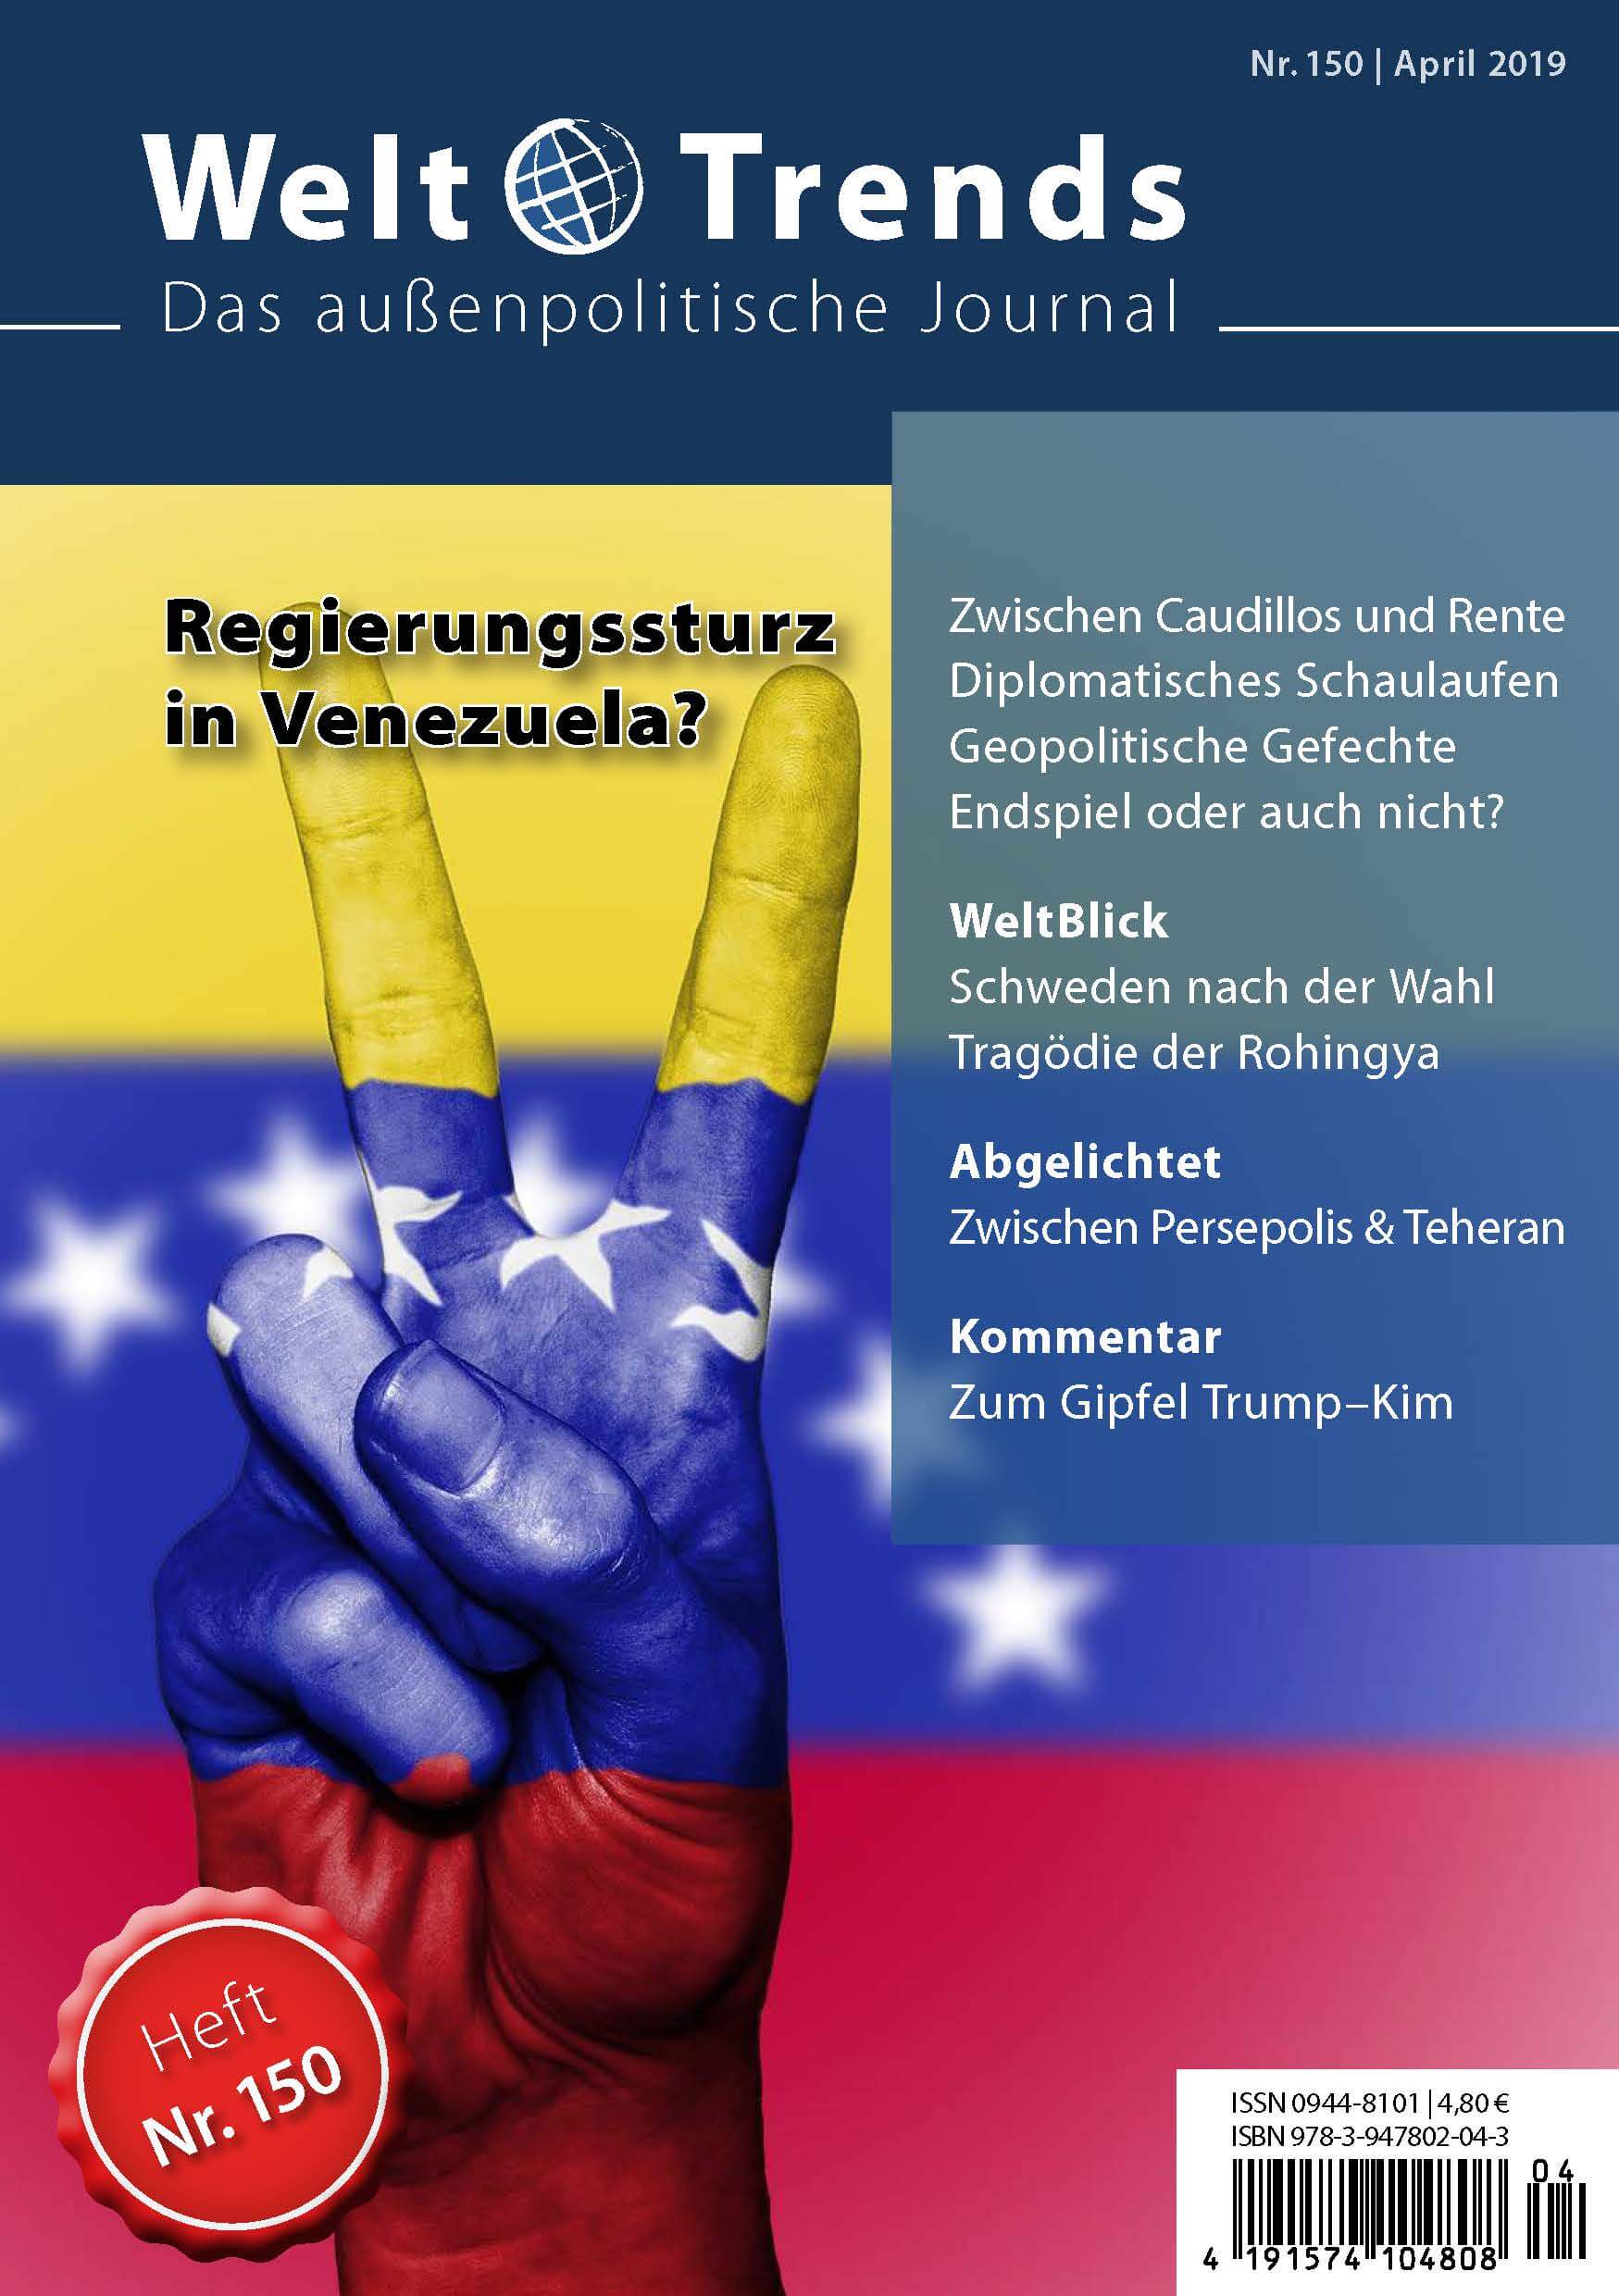 WeltTrends 150: Regierungssturz in Venezuela?